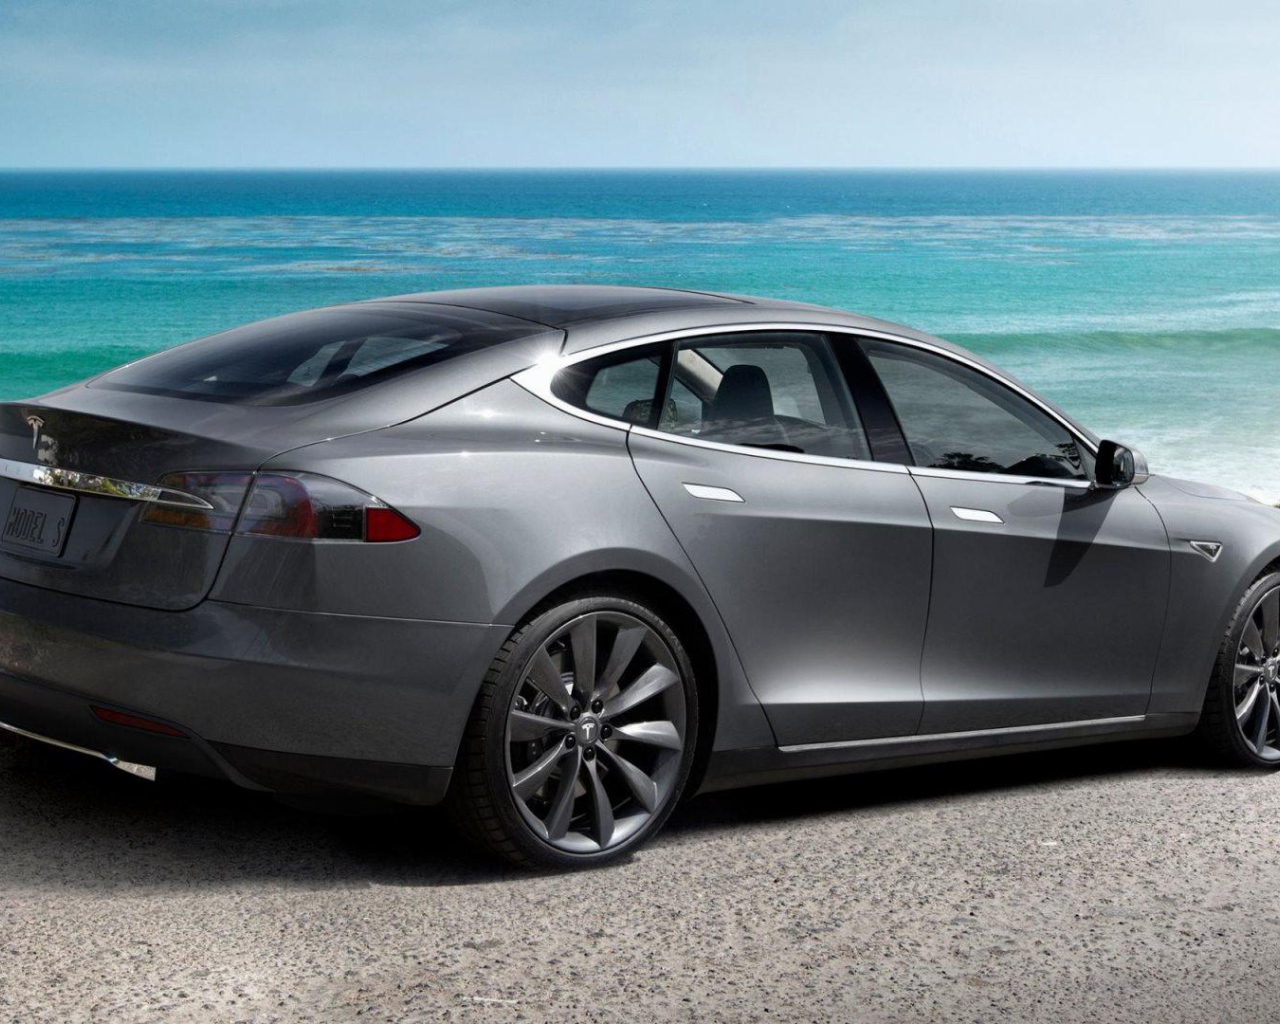 Электрокар Tesla Model S на фоне океана   